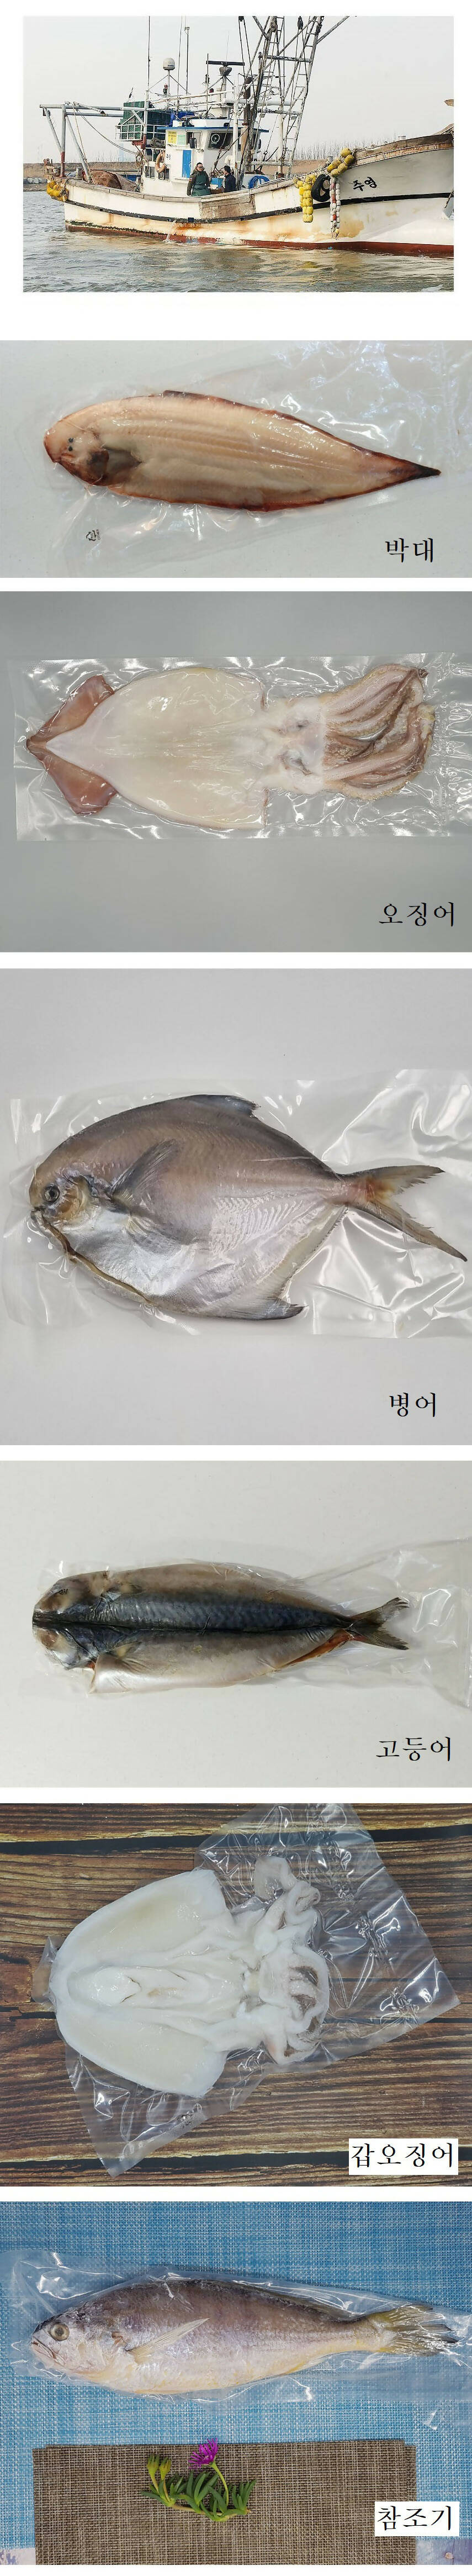 [고국배송] 밥강도 수산물 6종(14팩) 선물세트